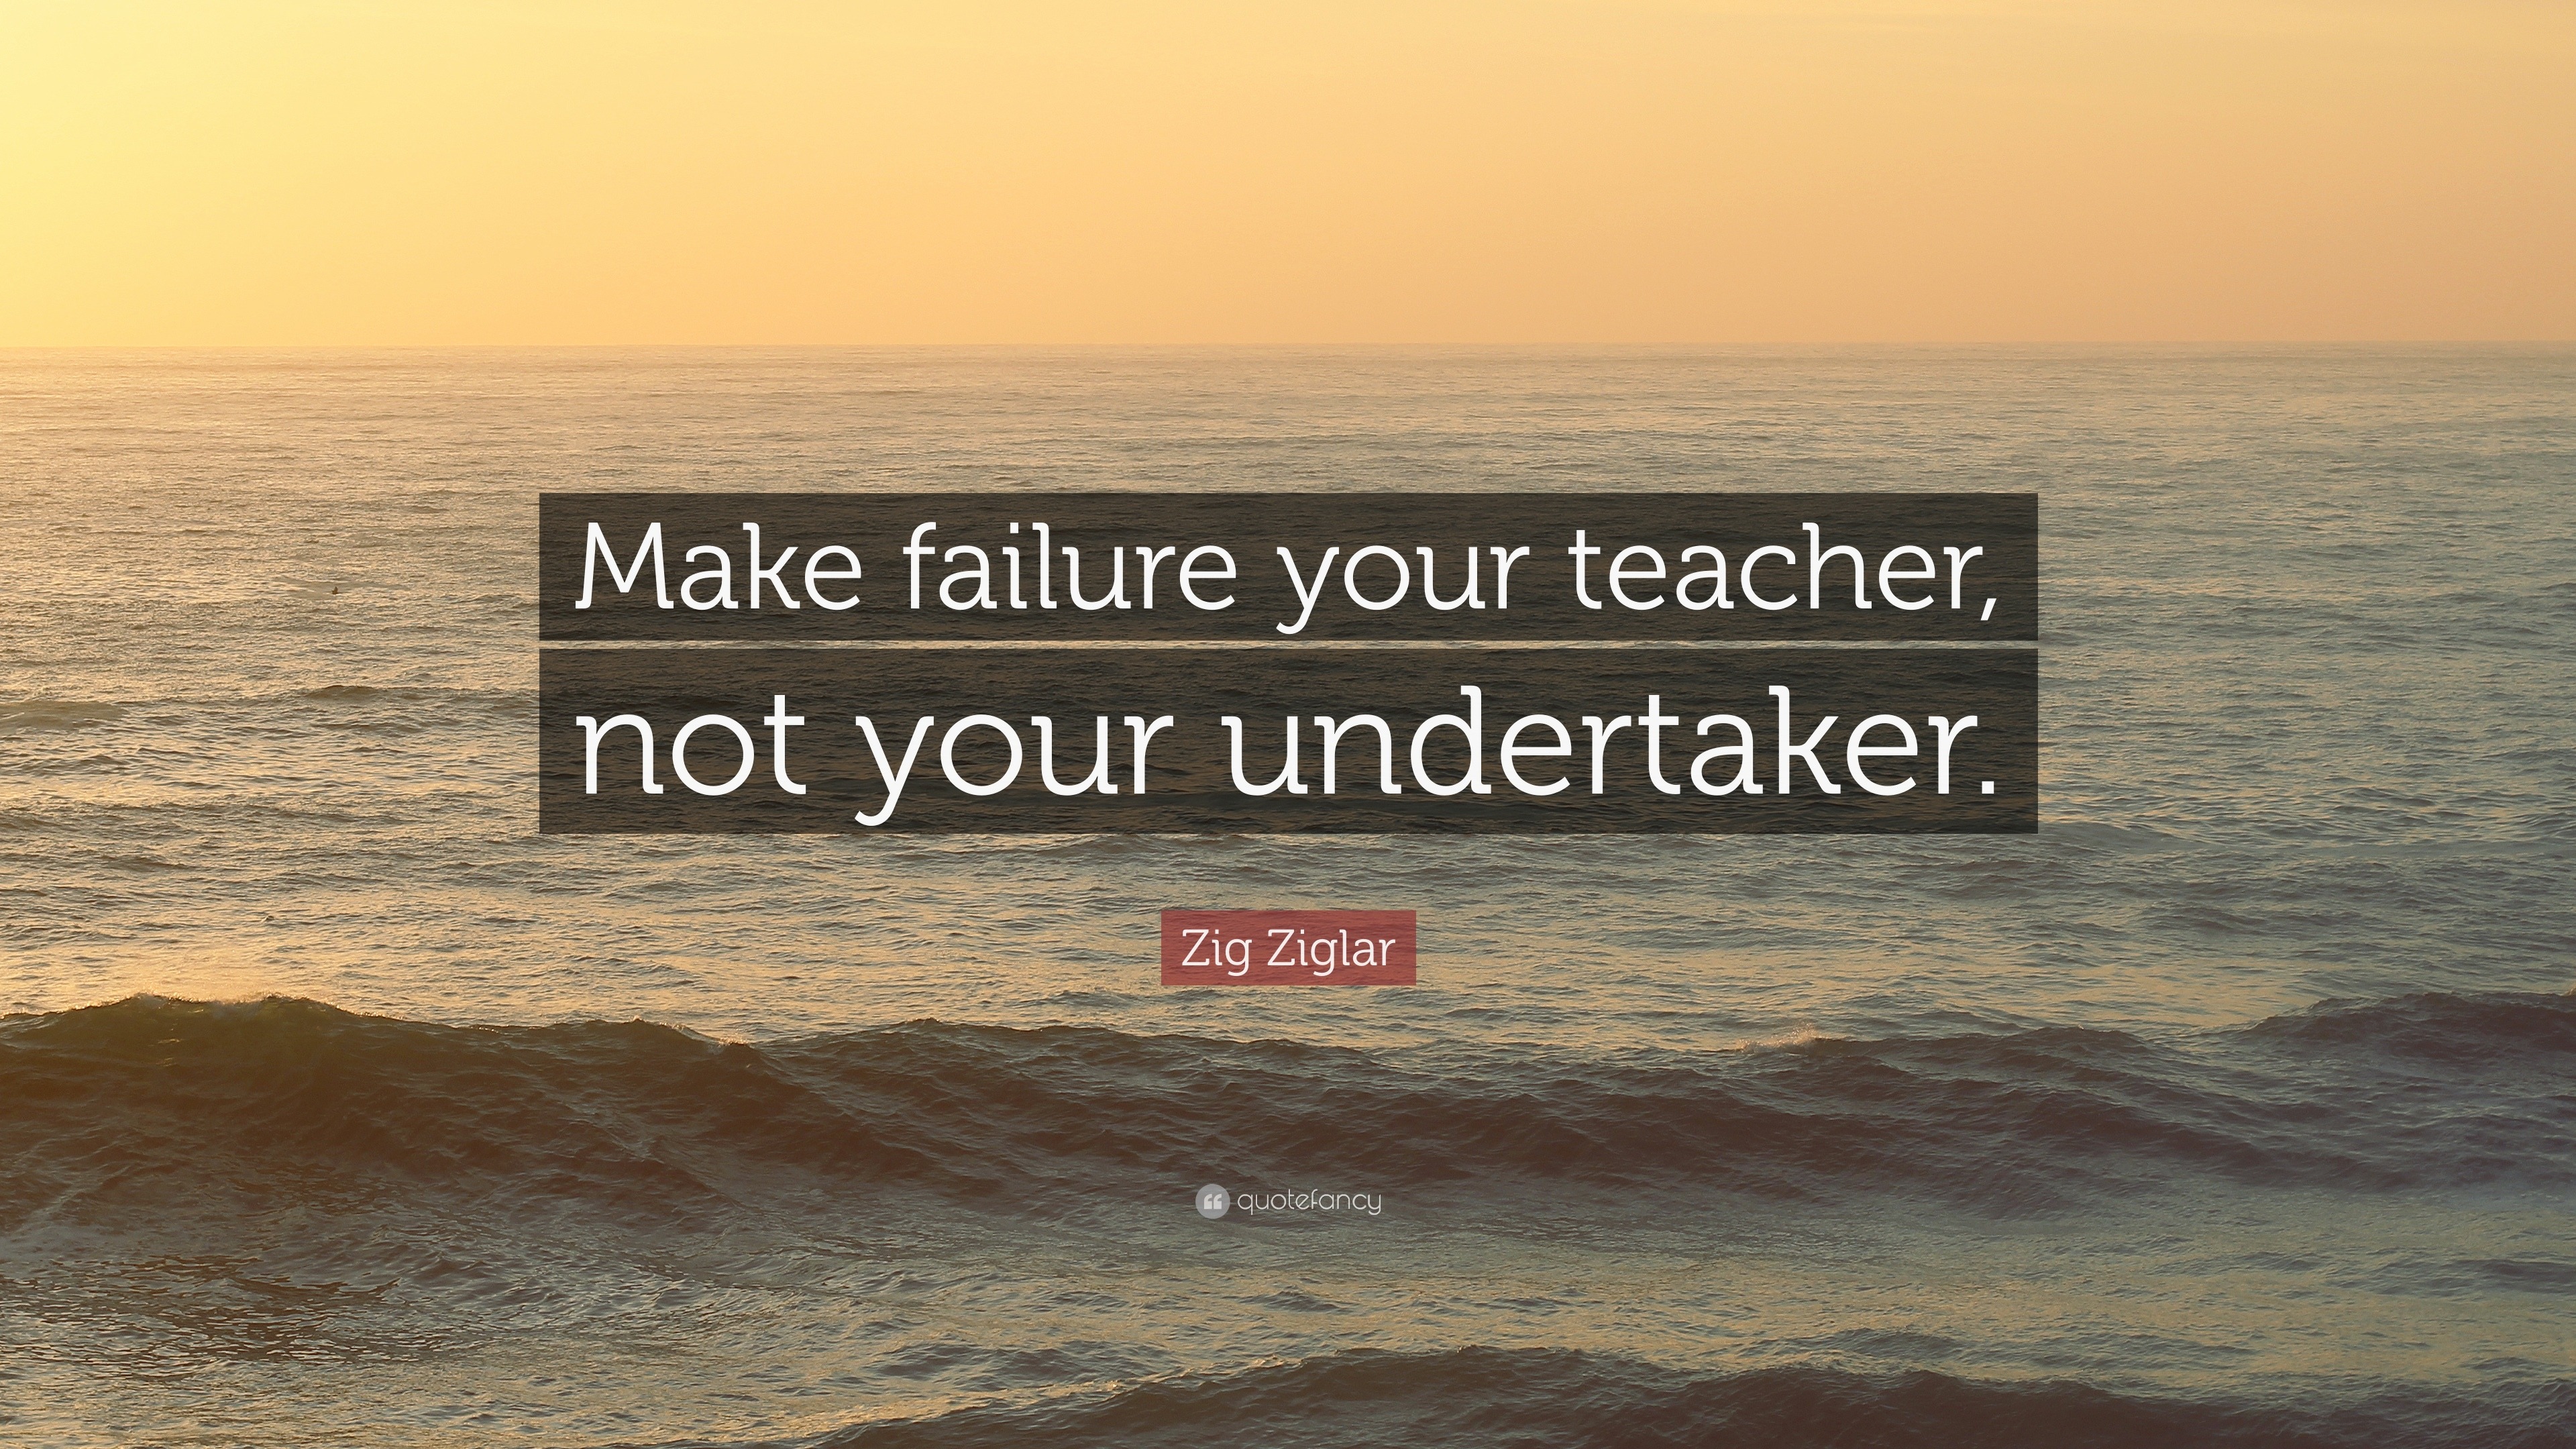 Zig Ziglar Quote: “Make failure your teacher, not your undertaker.”